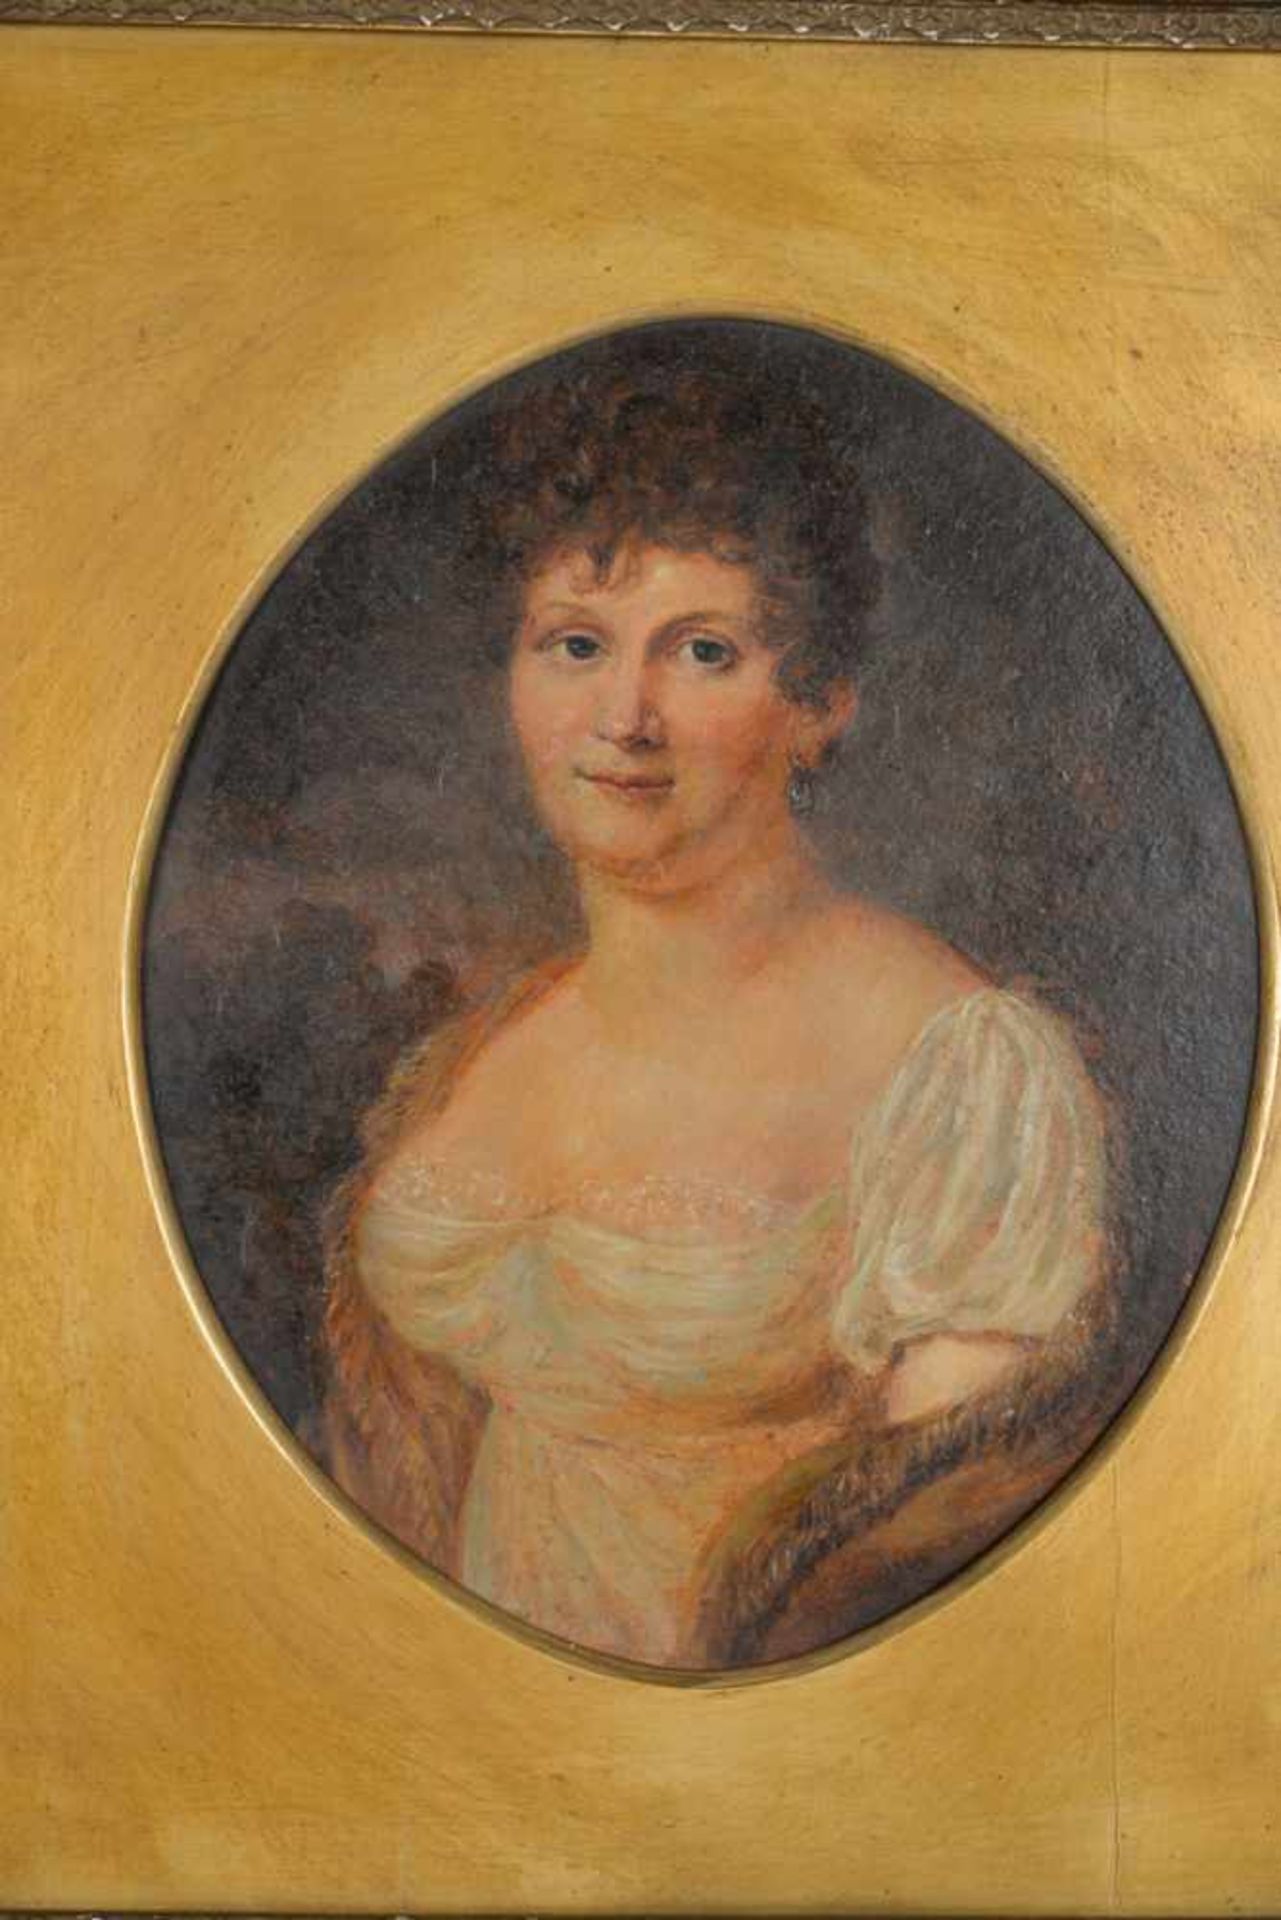 Brustporträt einer Dame mit Ohrring, wohl englisch.Öl auf Malplatte, Datierung um 1900, - Bild 2 aus 7